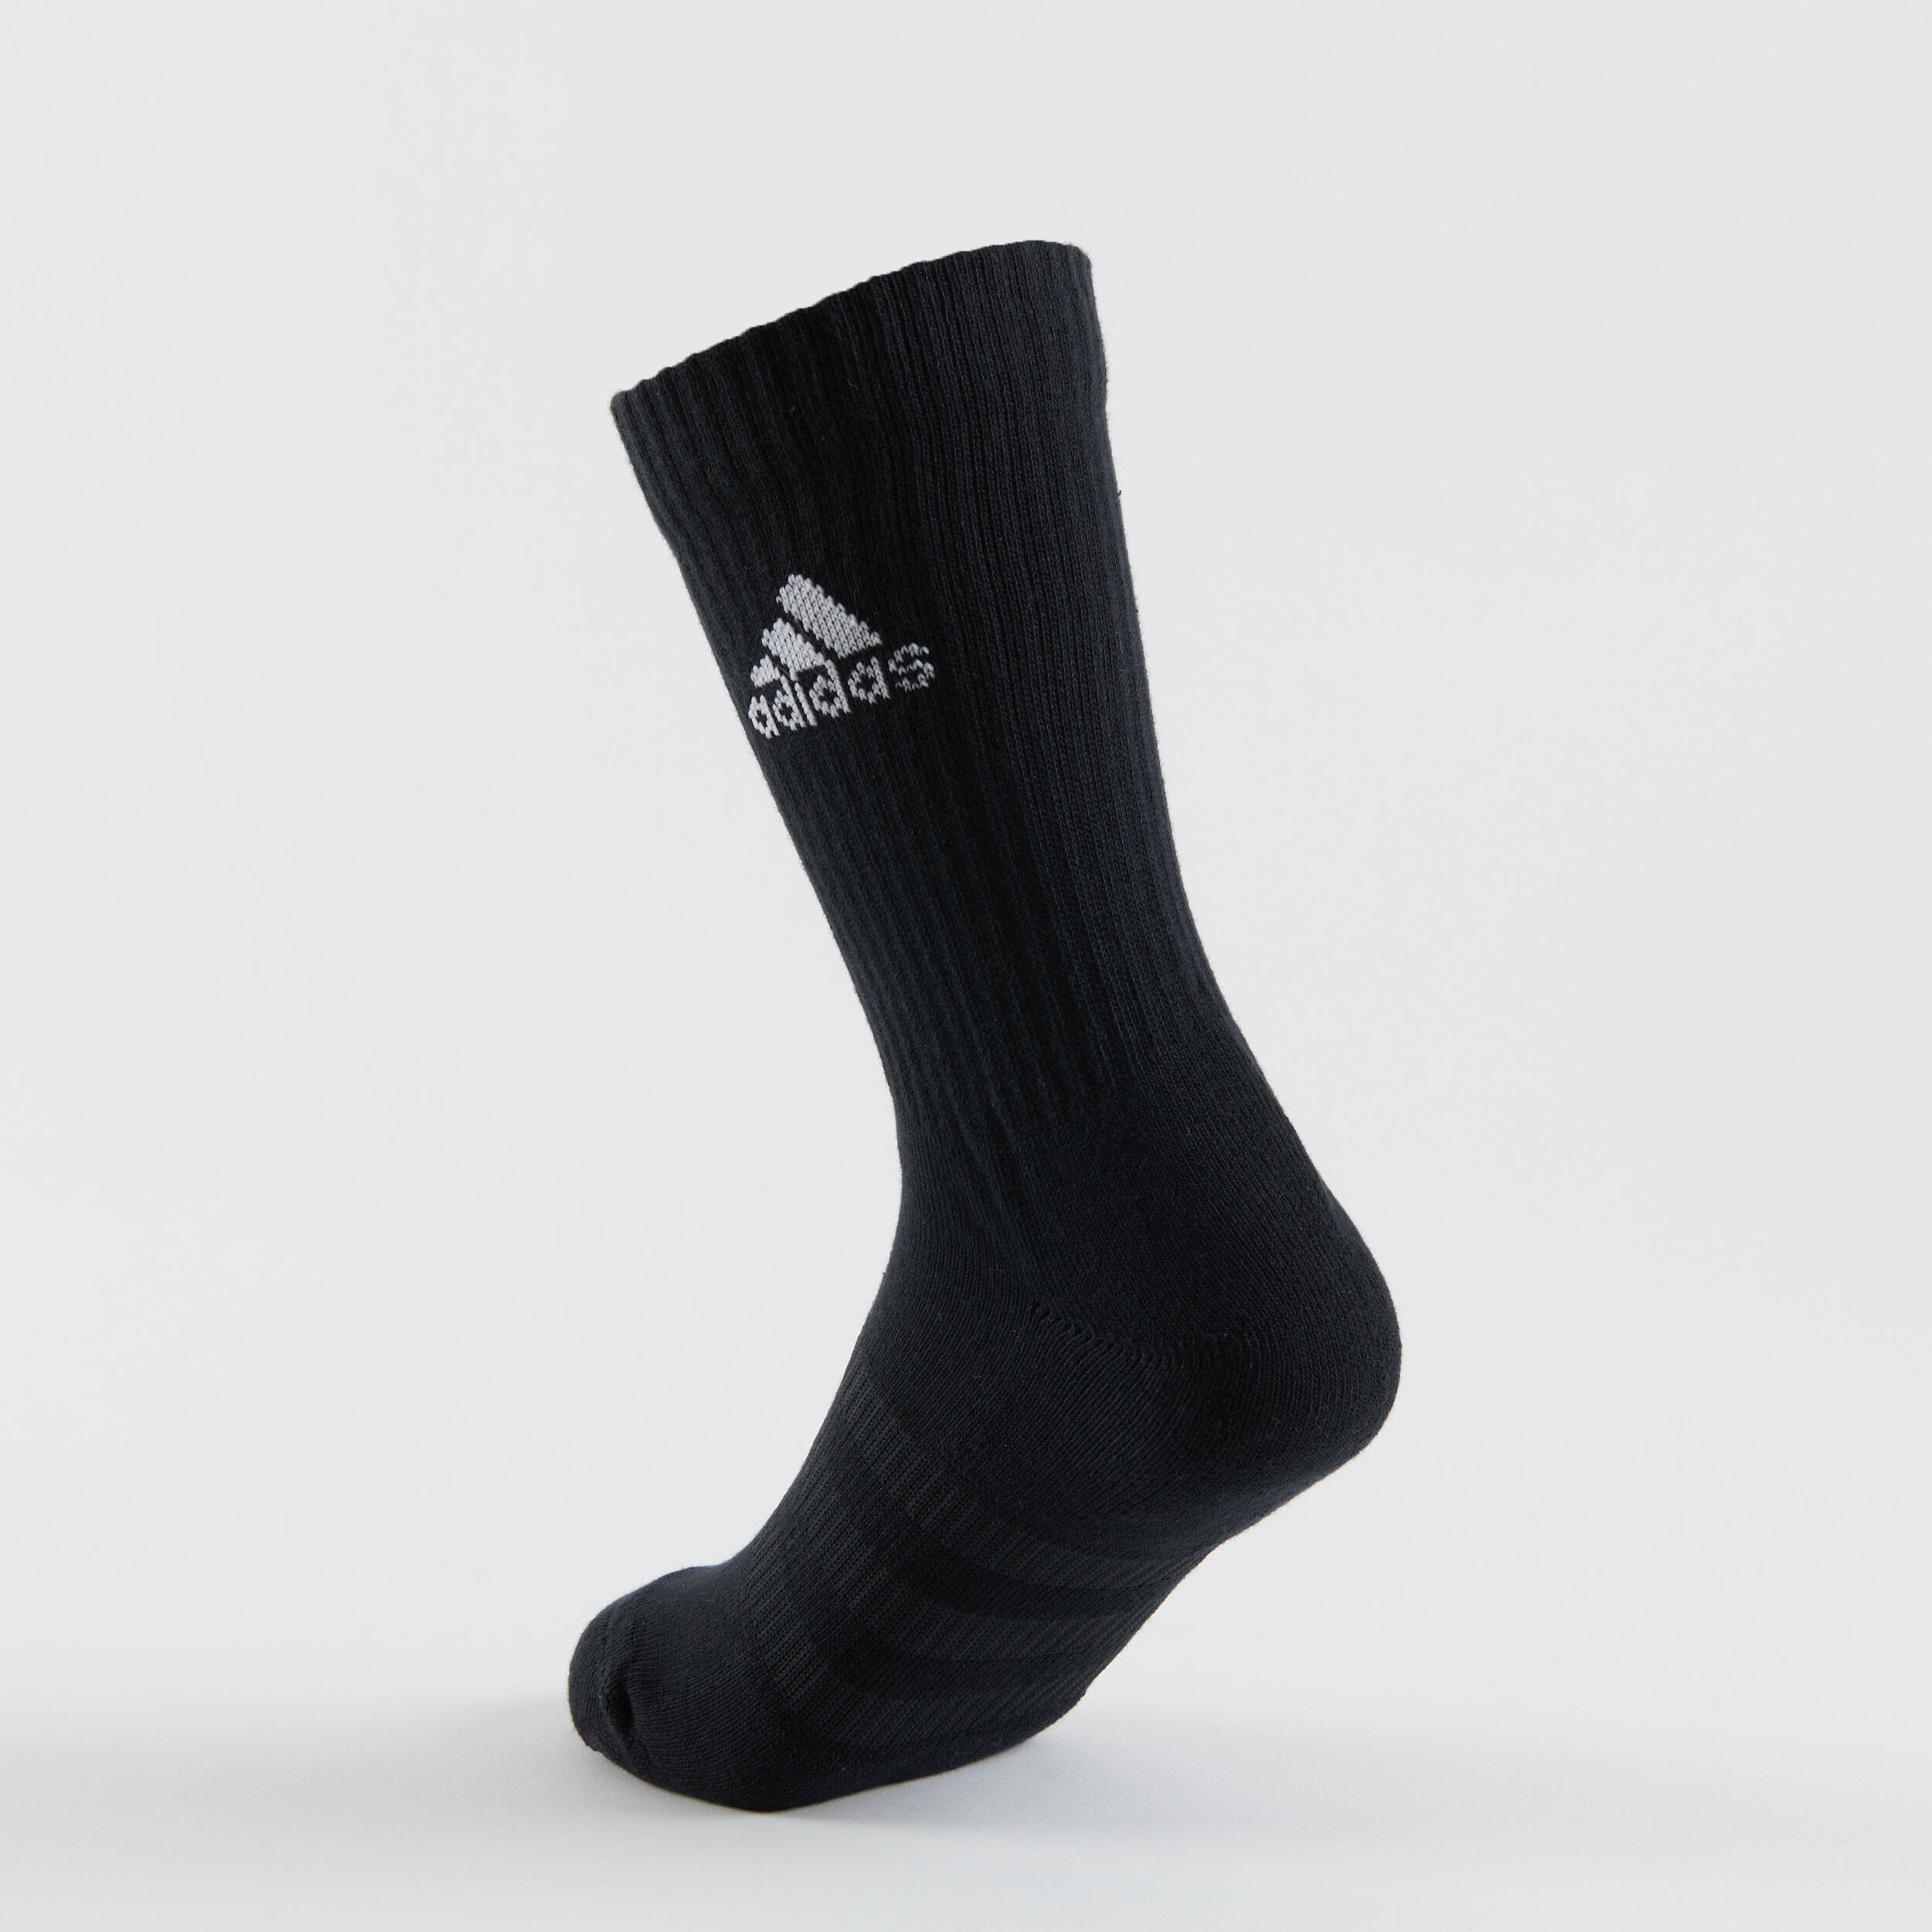 High Sports Socks Tri-Pack - Grey/White/Black 7/14